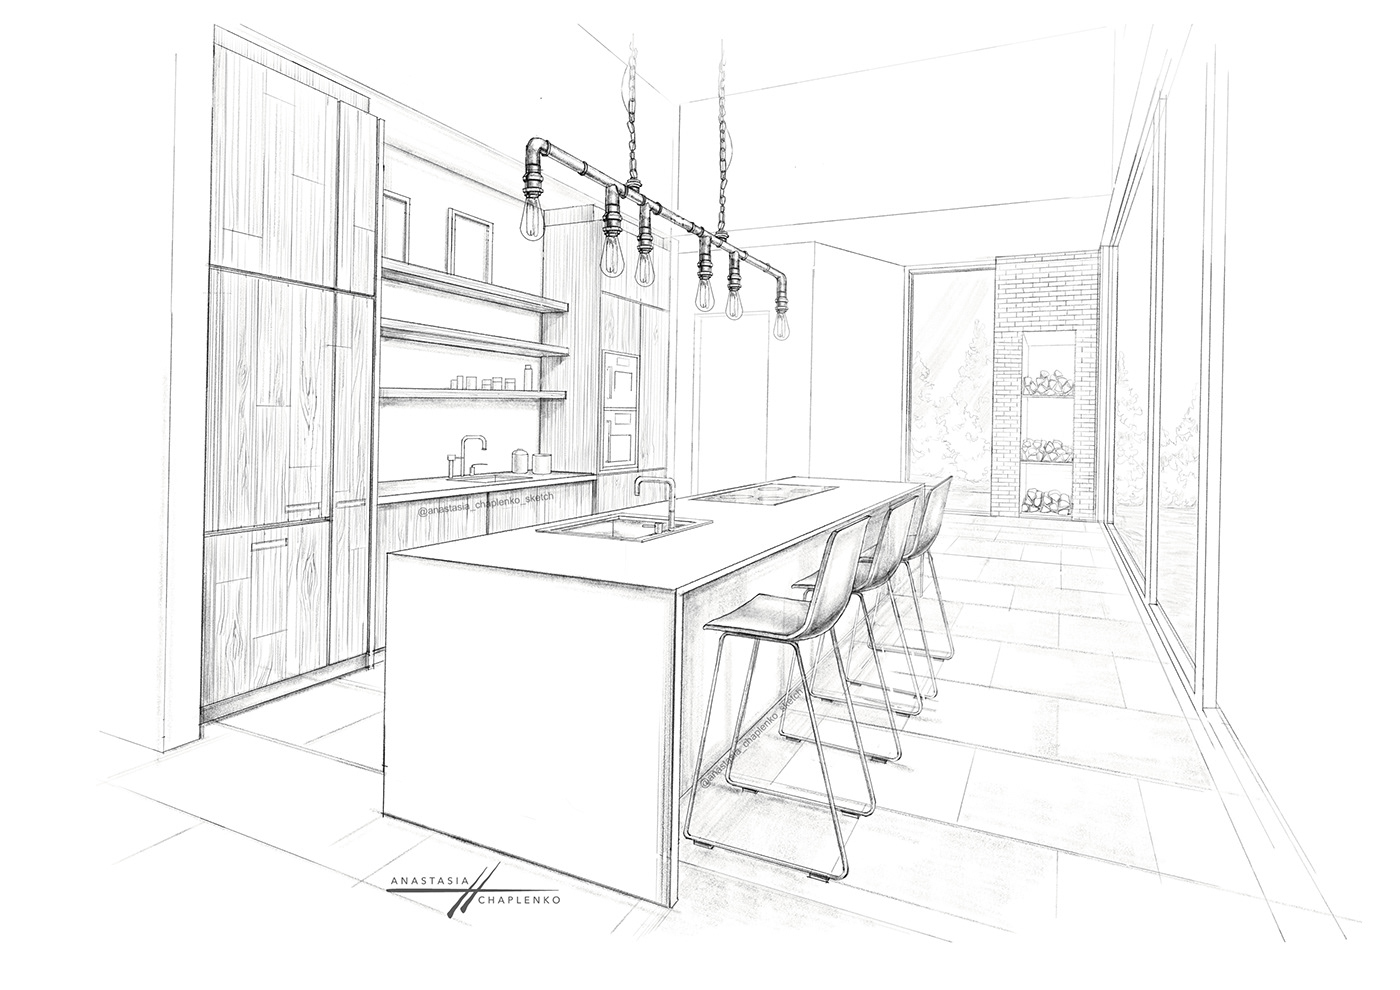 anastasia chaplenko architecture interior design  kitchen visualization rendering sketch visualization